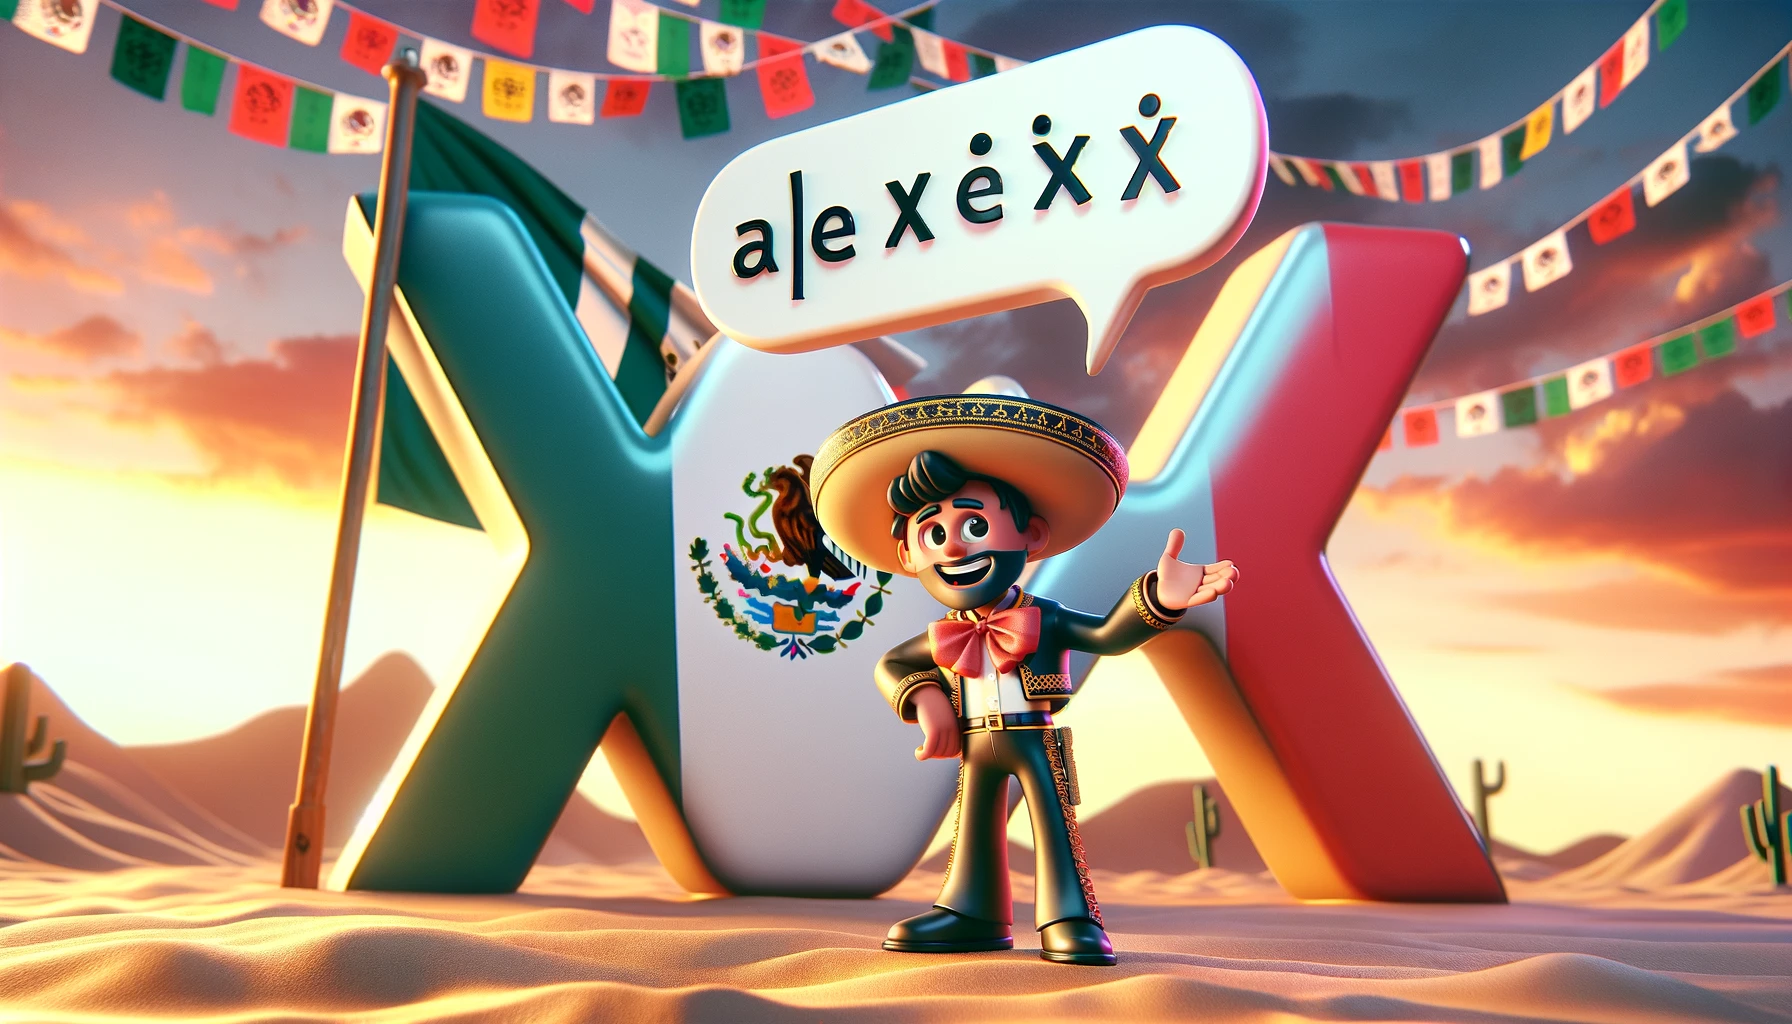 como se pronuncia la x en mexico